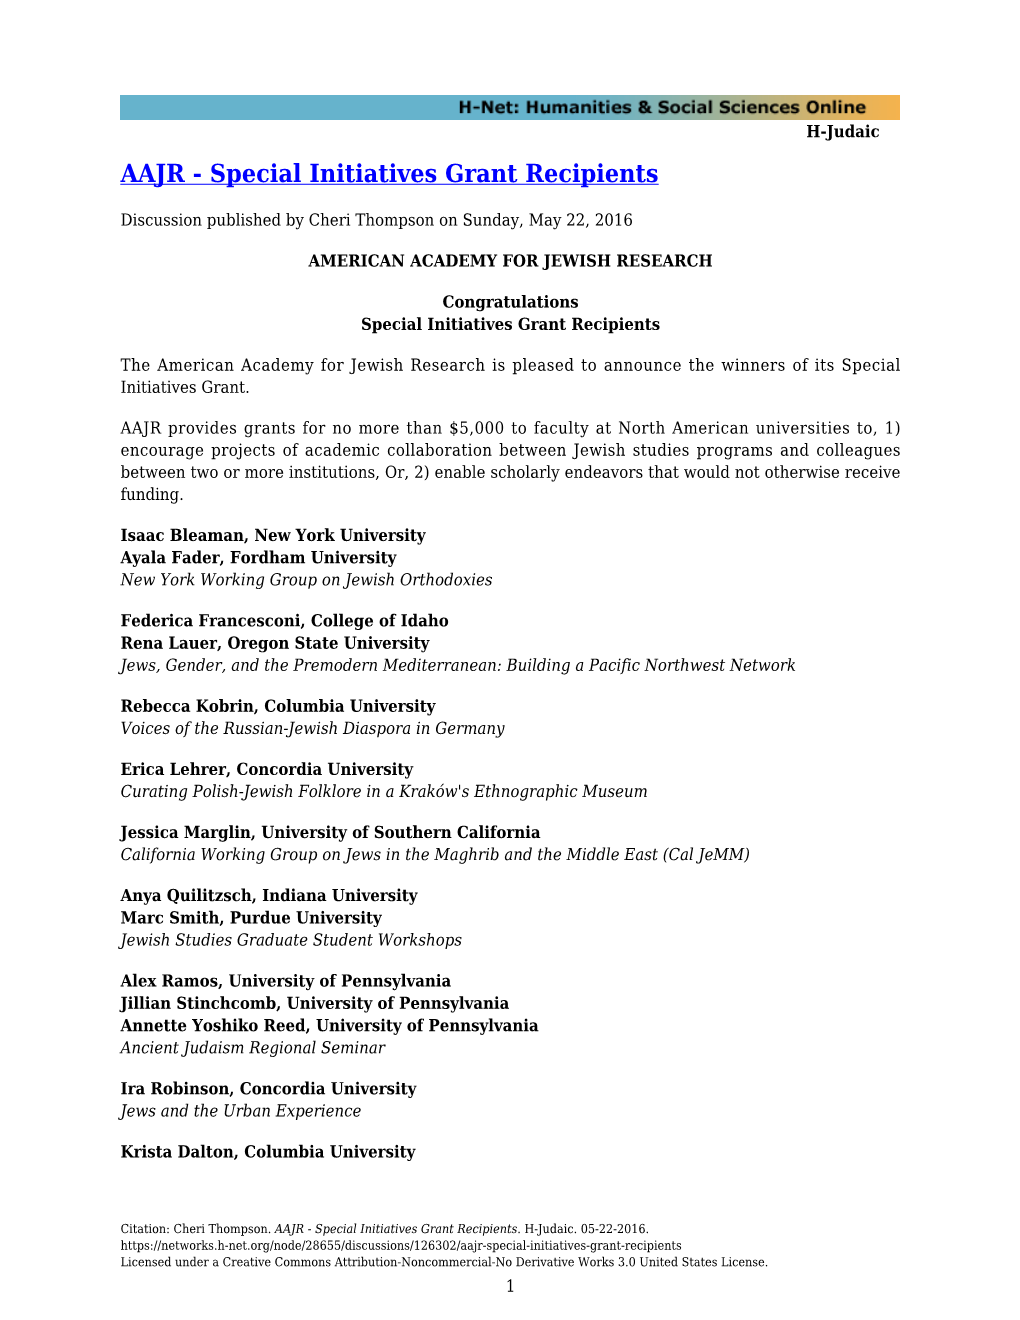 Special Initiatives Grant Recipients